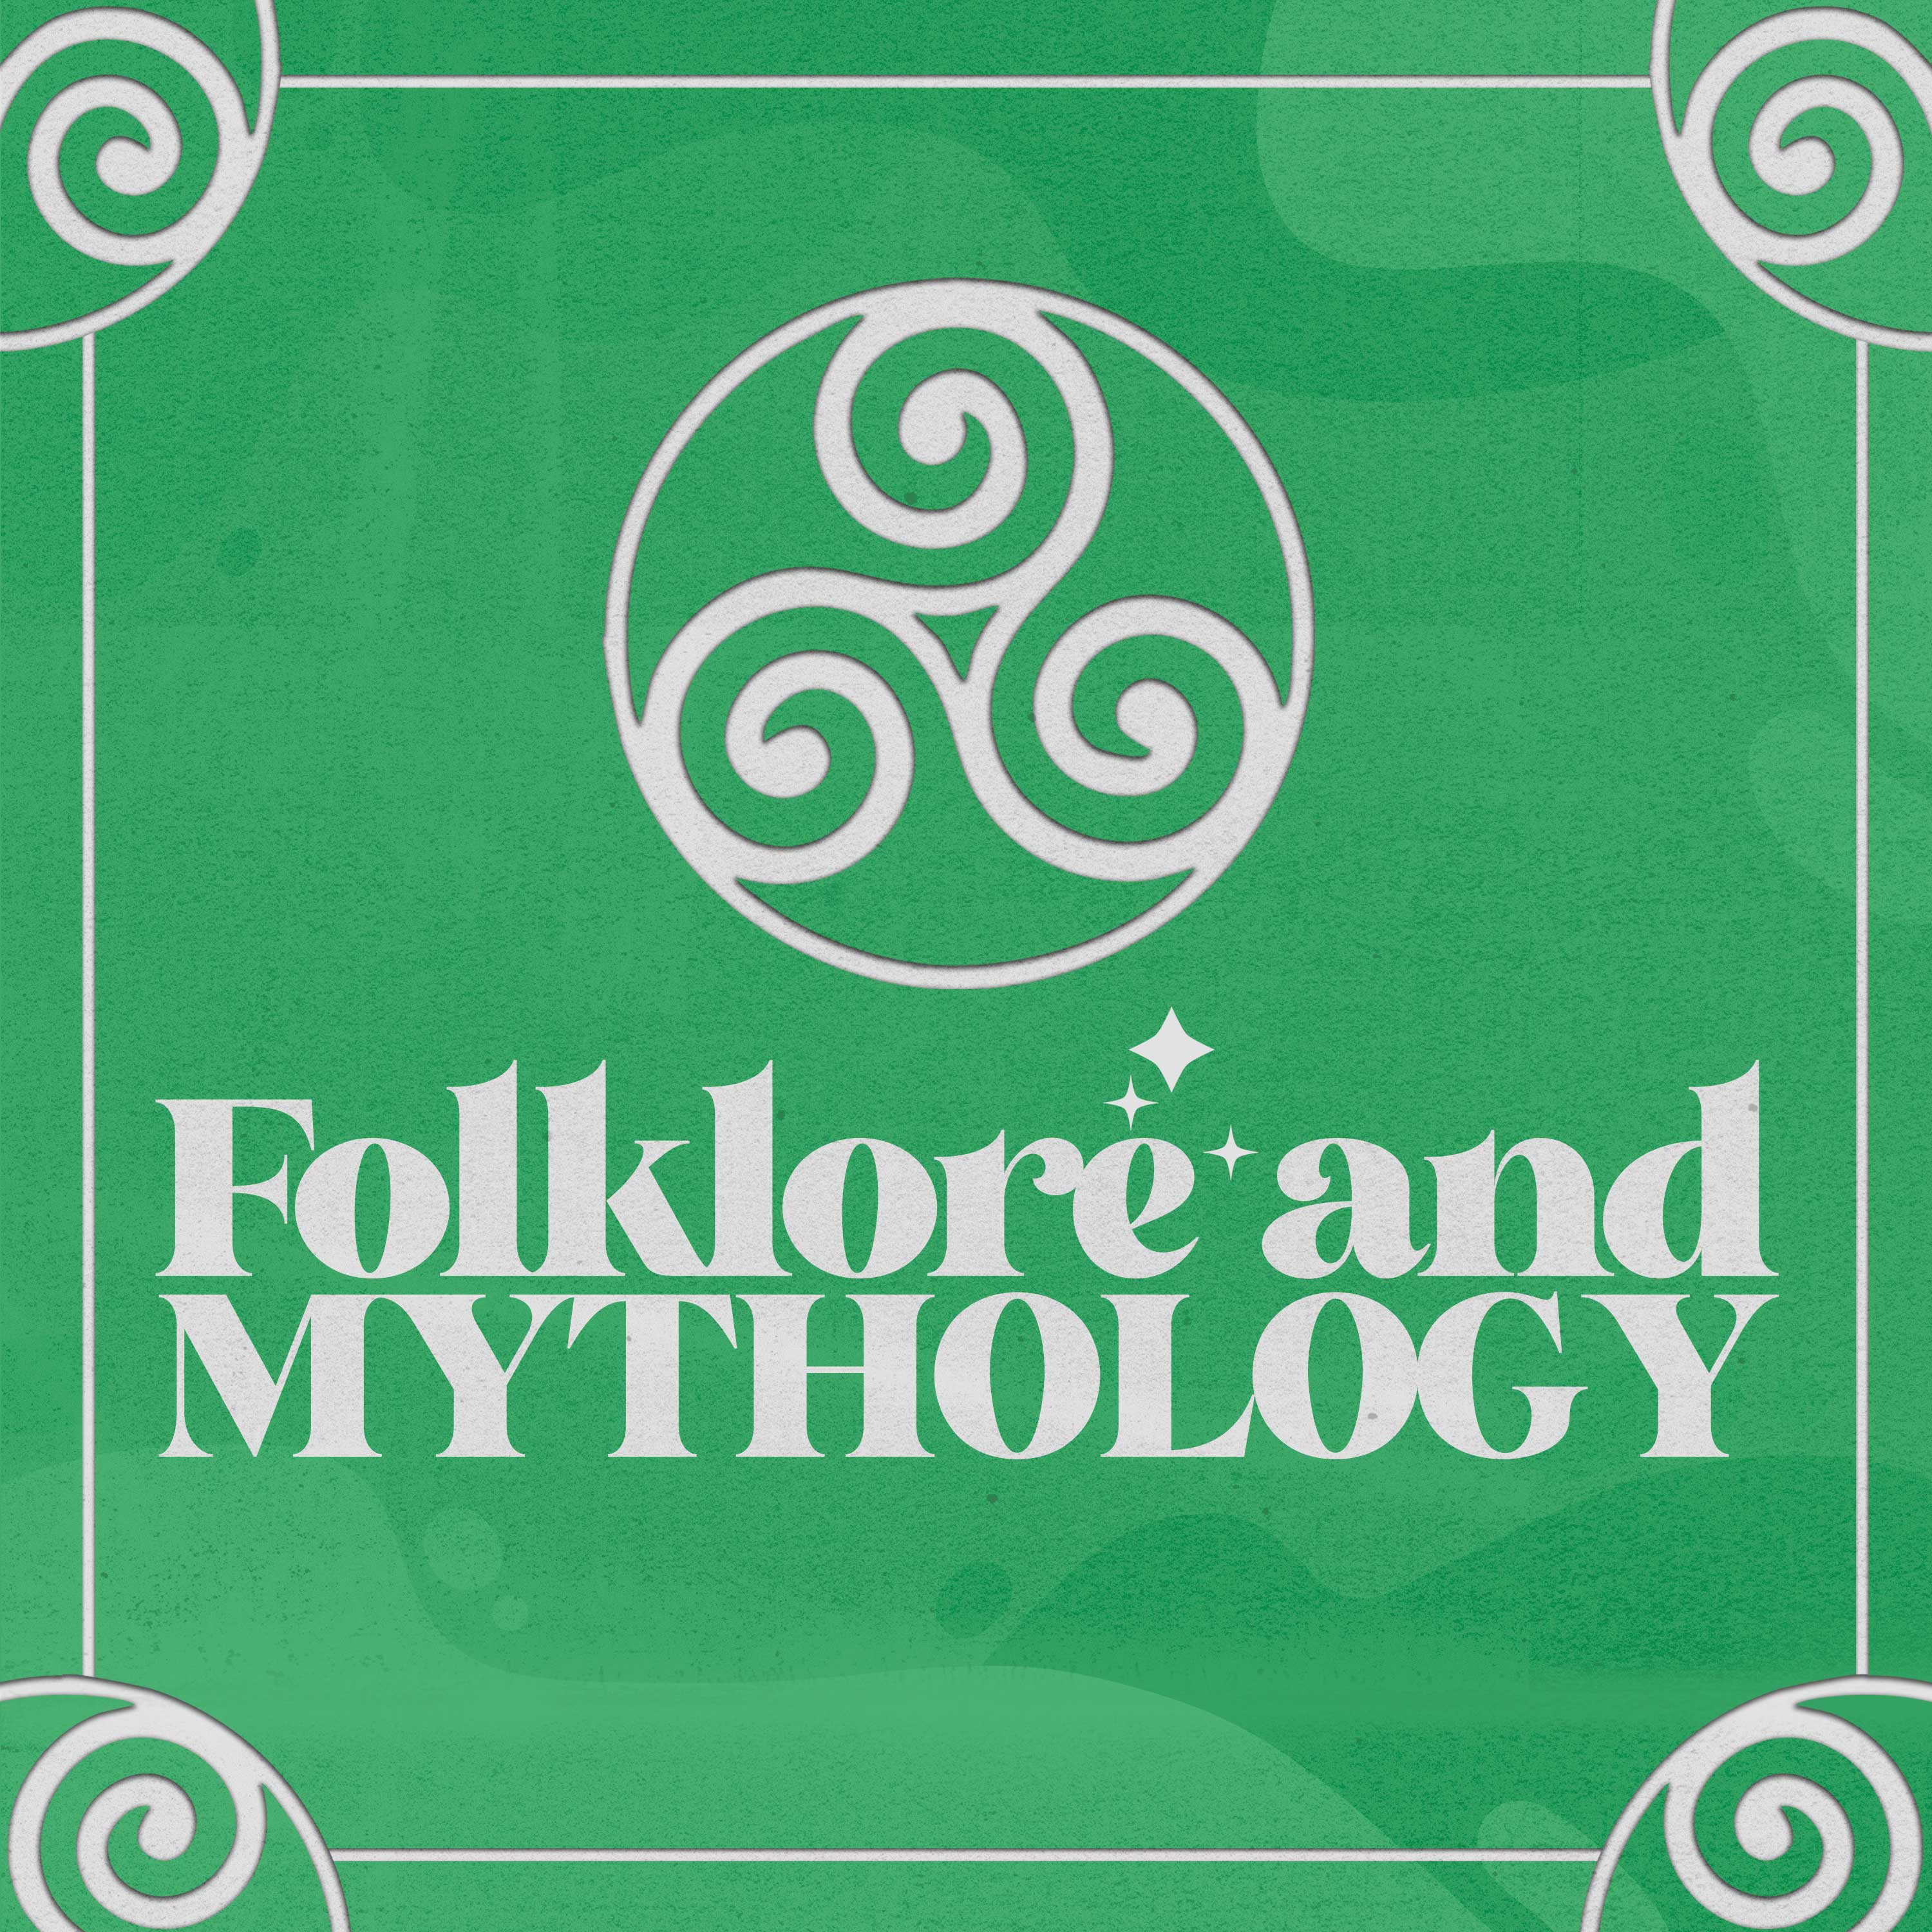 Folklore and Mythology